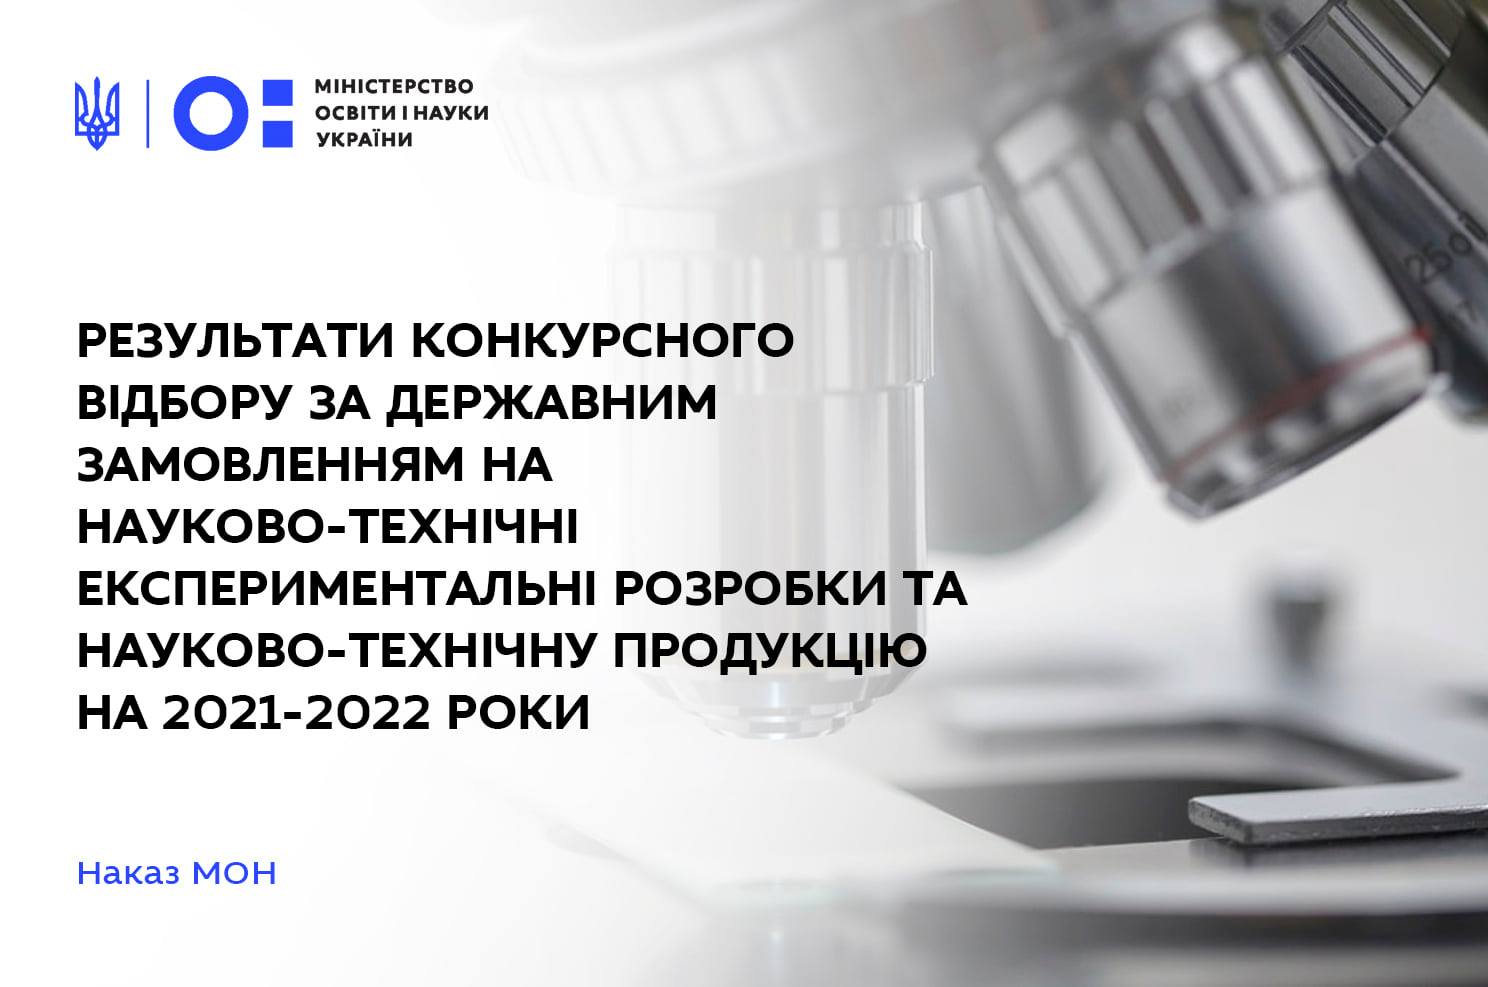 Результати конкурсного відбору науково-технічних єкспериментальних розробок та науково-технічної продукції на 2021-2022 роки за державним замовленням